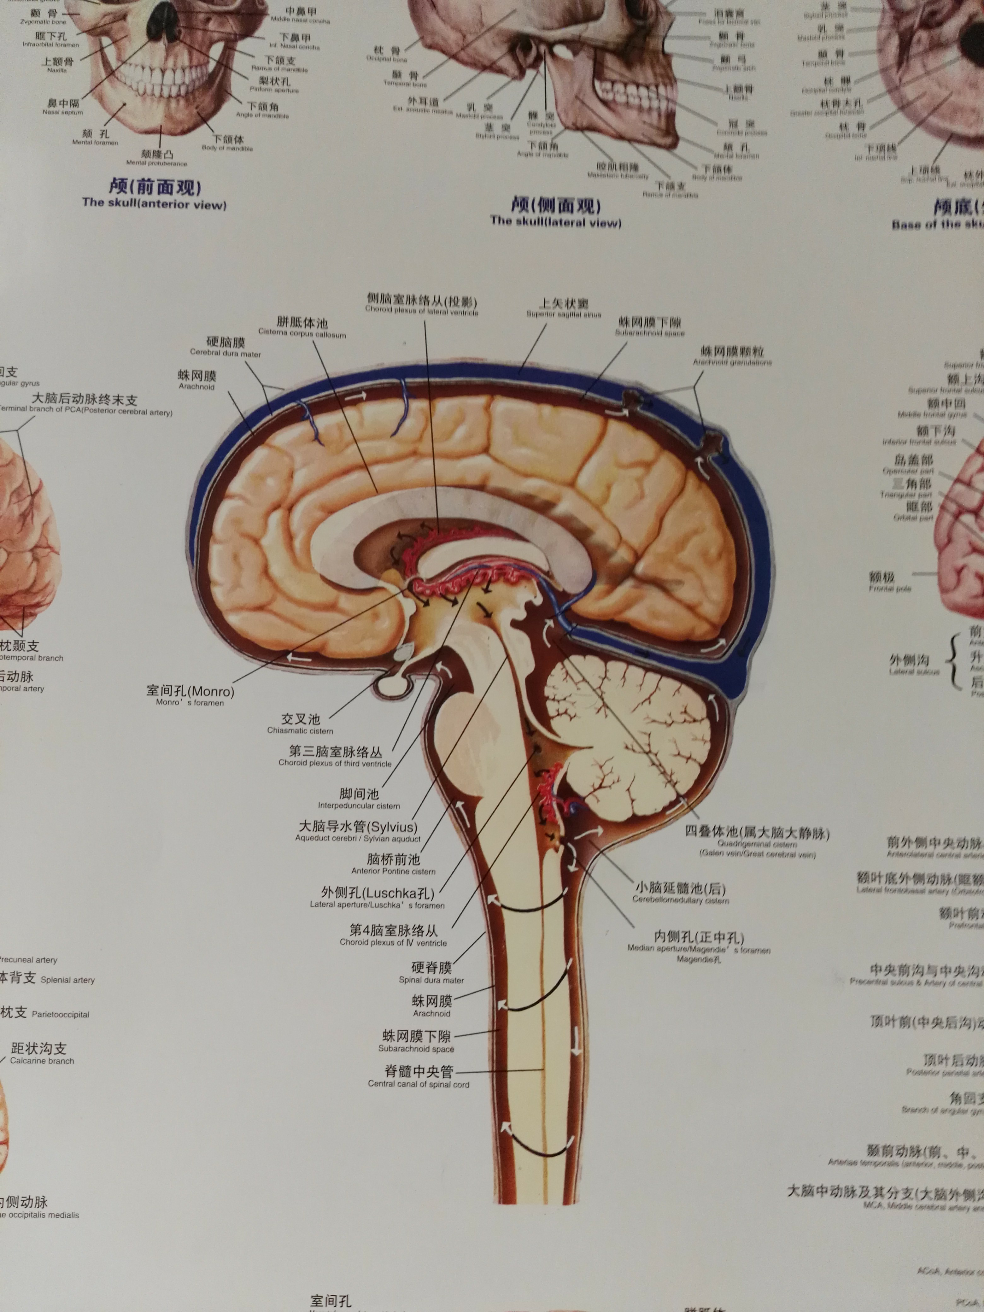 上面这张图应该能清楚看到延髓池,侧脑室和第三脑室脉络层产生脑脊液